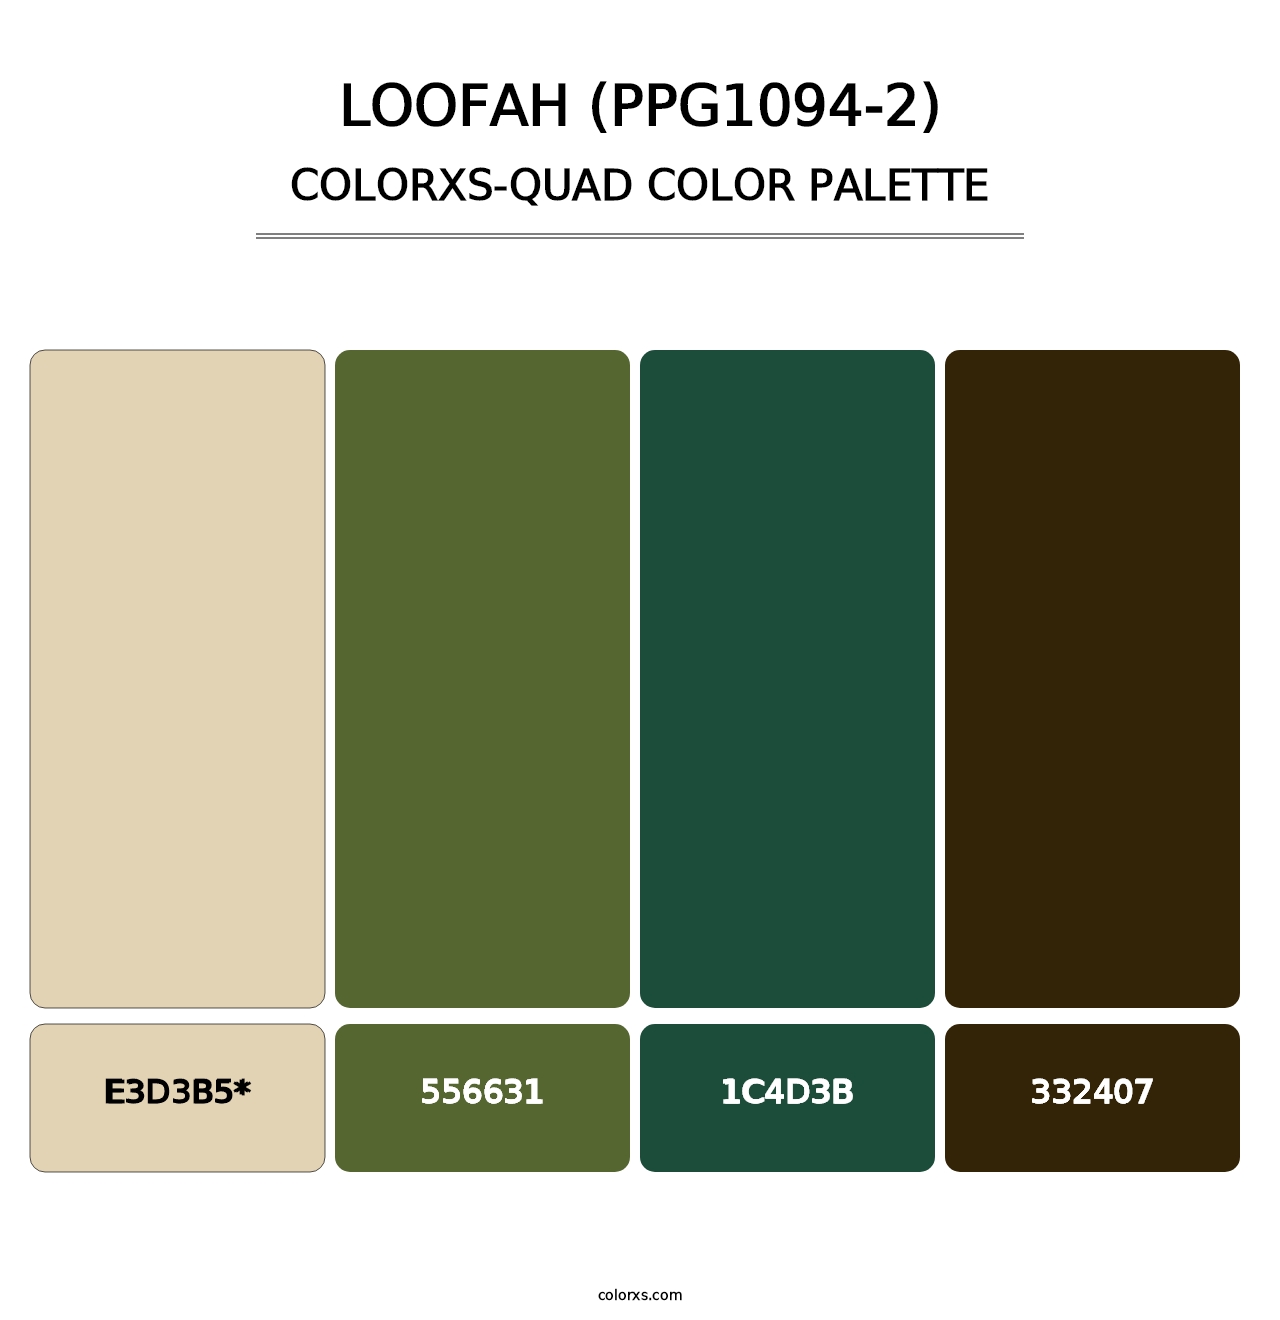 Loofah (PPG1094-2) - Colorxs Quad Palette